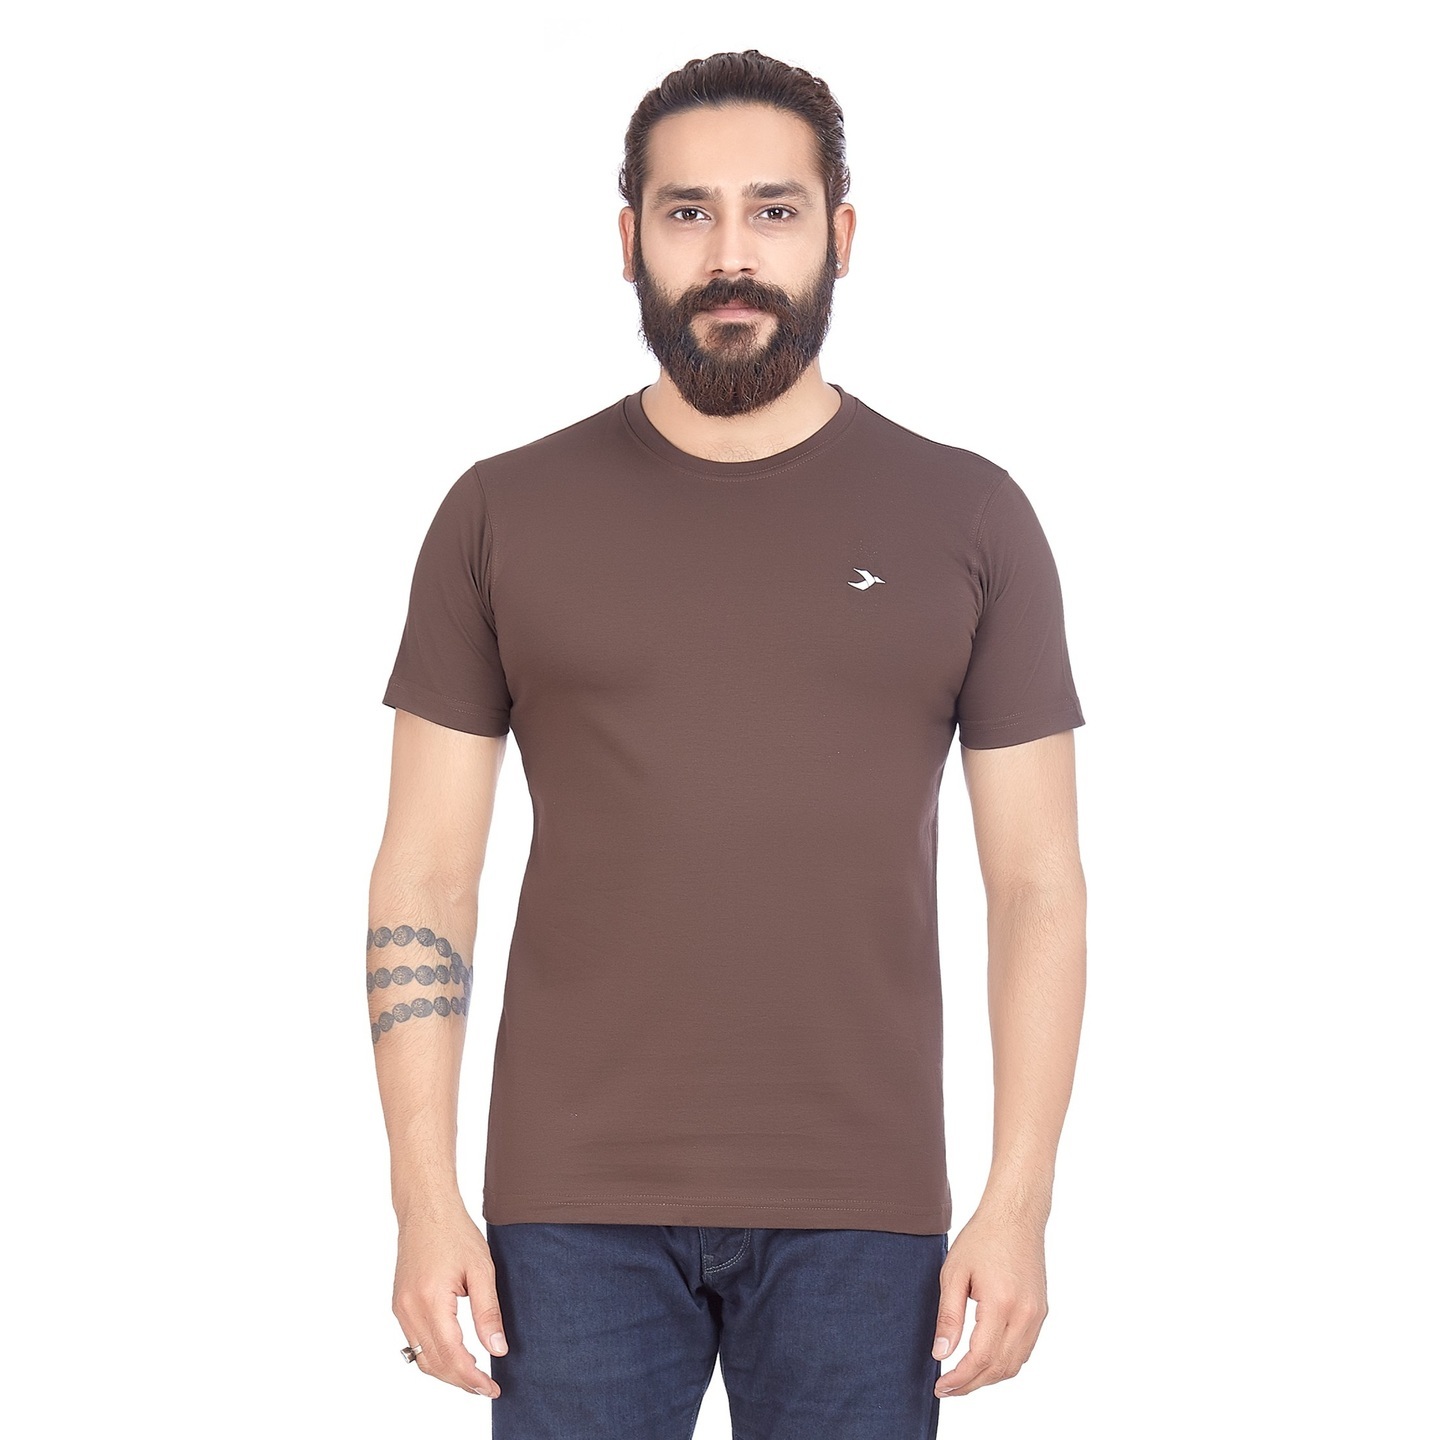 Men's Round Neck T-Shirt- Coffee Brown